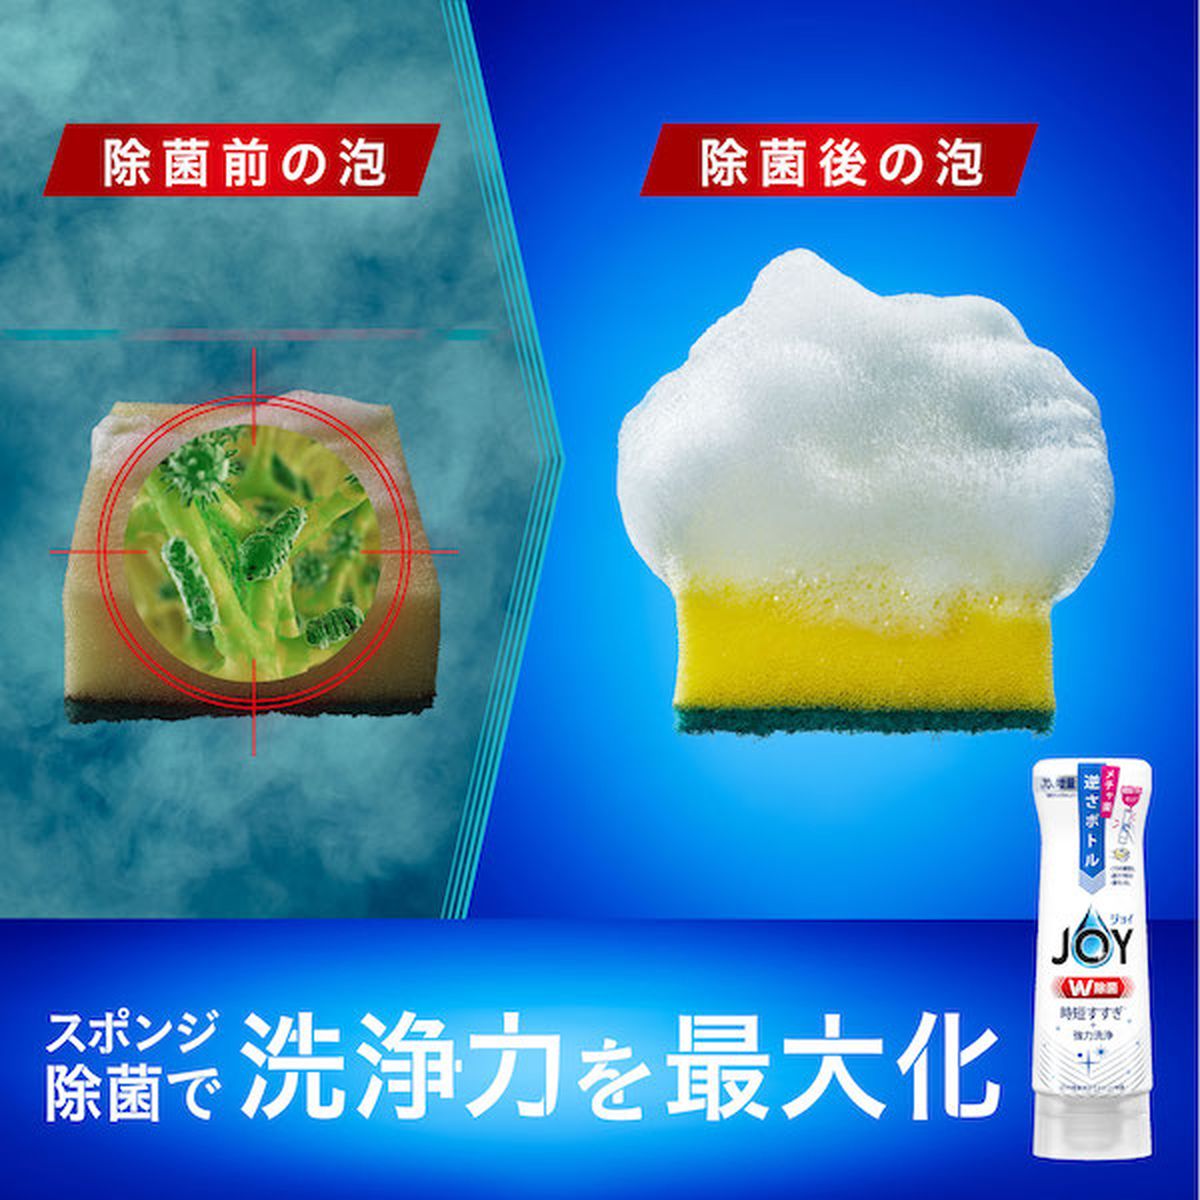 ジョイ W除菌 食器用洗剤 スパークリングレモンの香り 詰め替え 超特大ジャンボ 1425ml×6袋